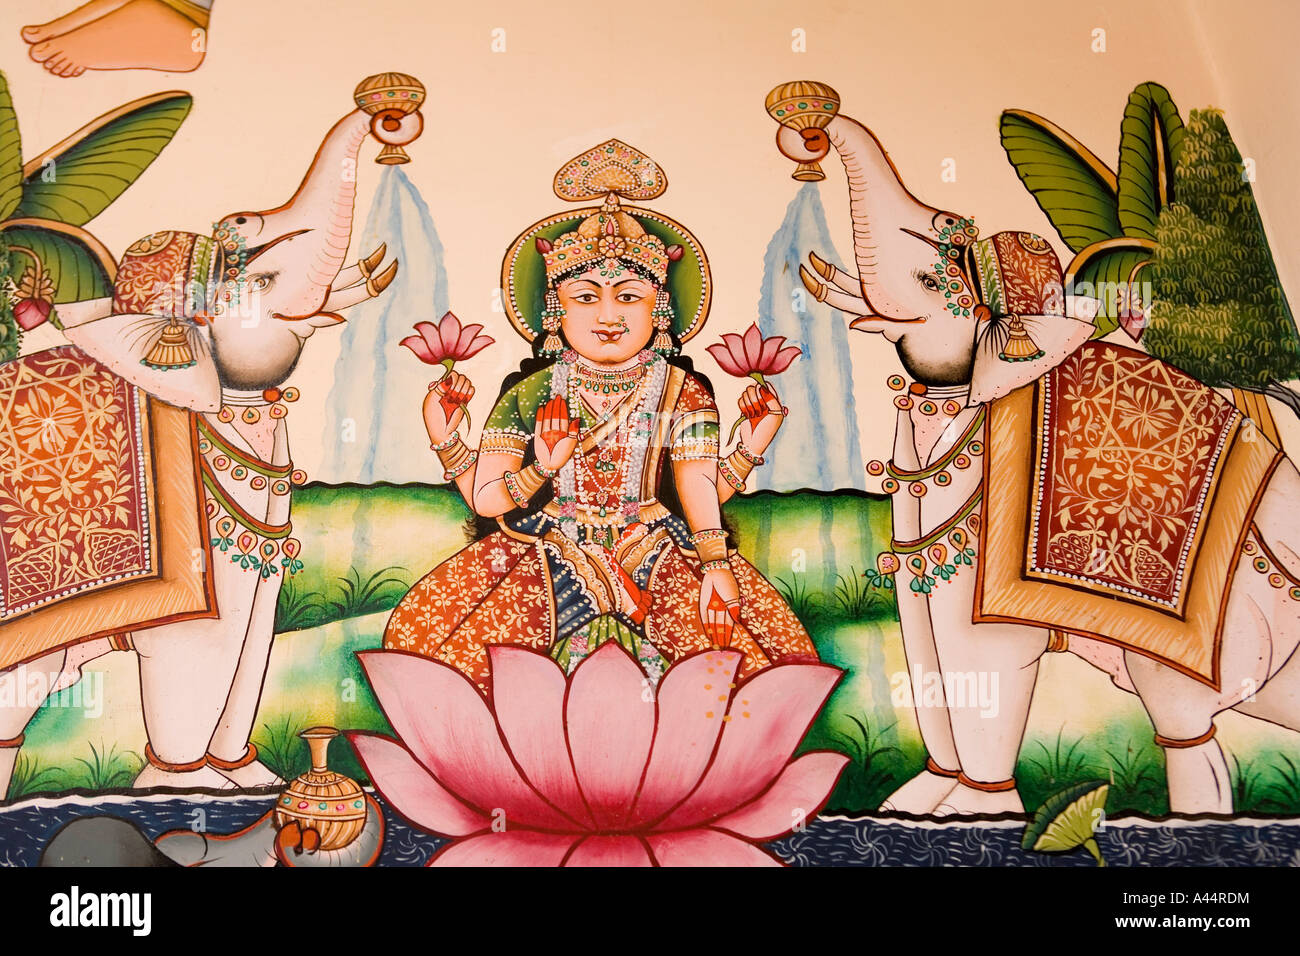 Inde Rajasthan Palkiya Haveli Kota peinture murale modernes de haute qualité de dieu hindou dans un style traditionnel Banque D'Images